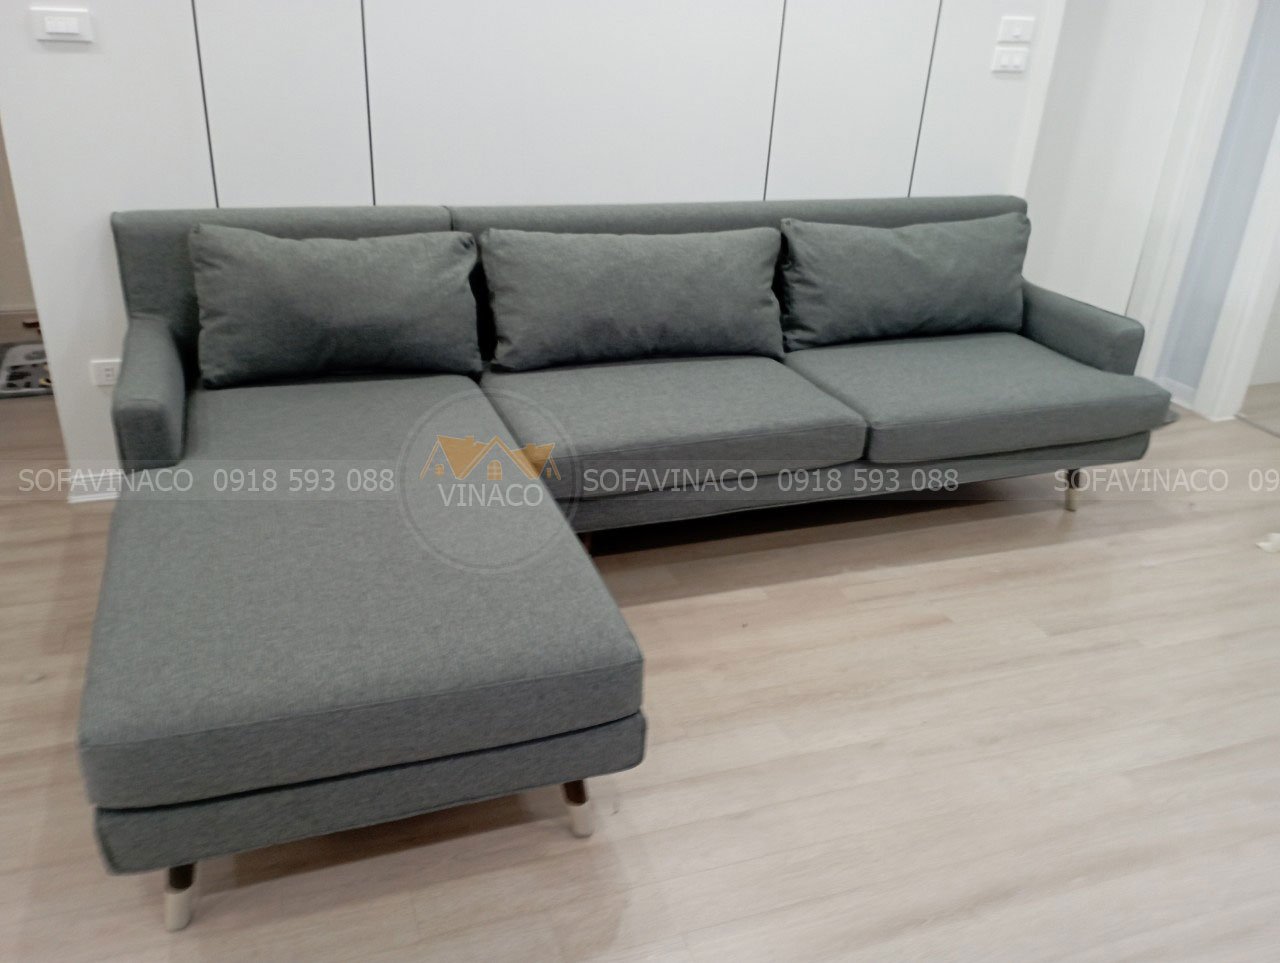 Bộ ghế sofa đã được bọc xong với một diện mạo mới mang đến cho gia đình một không gian sang trọng và hiện đại